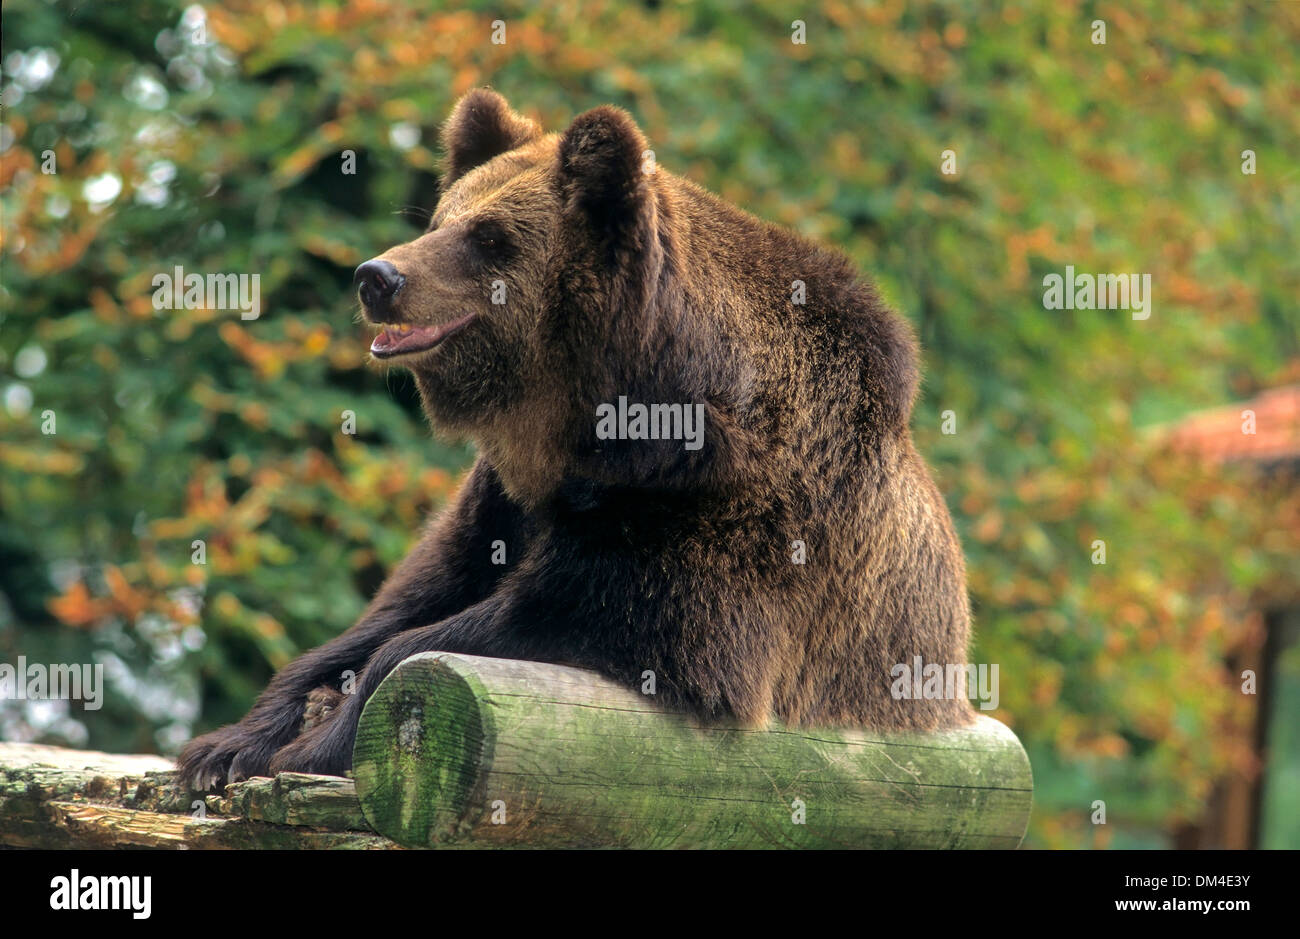 brown bear (Ursus arctos), Zoo: Braunbär (Ursus arctos) Stock Photo